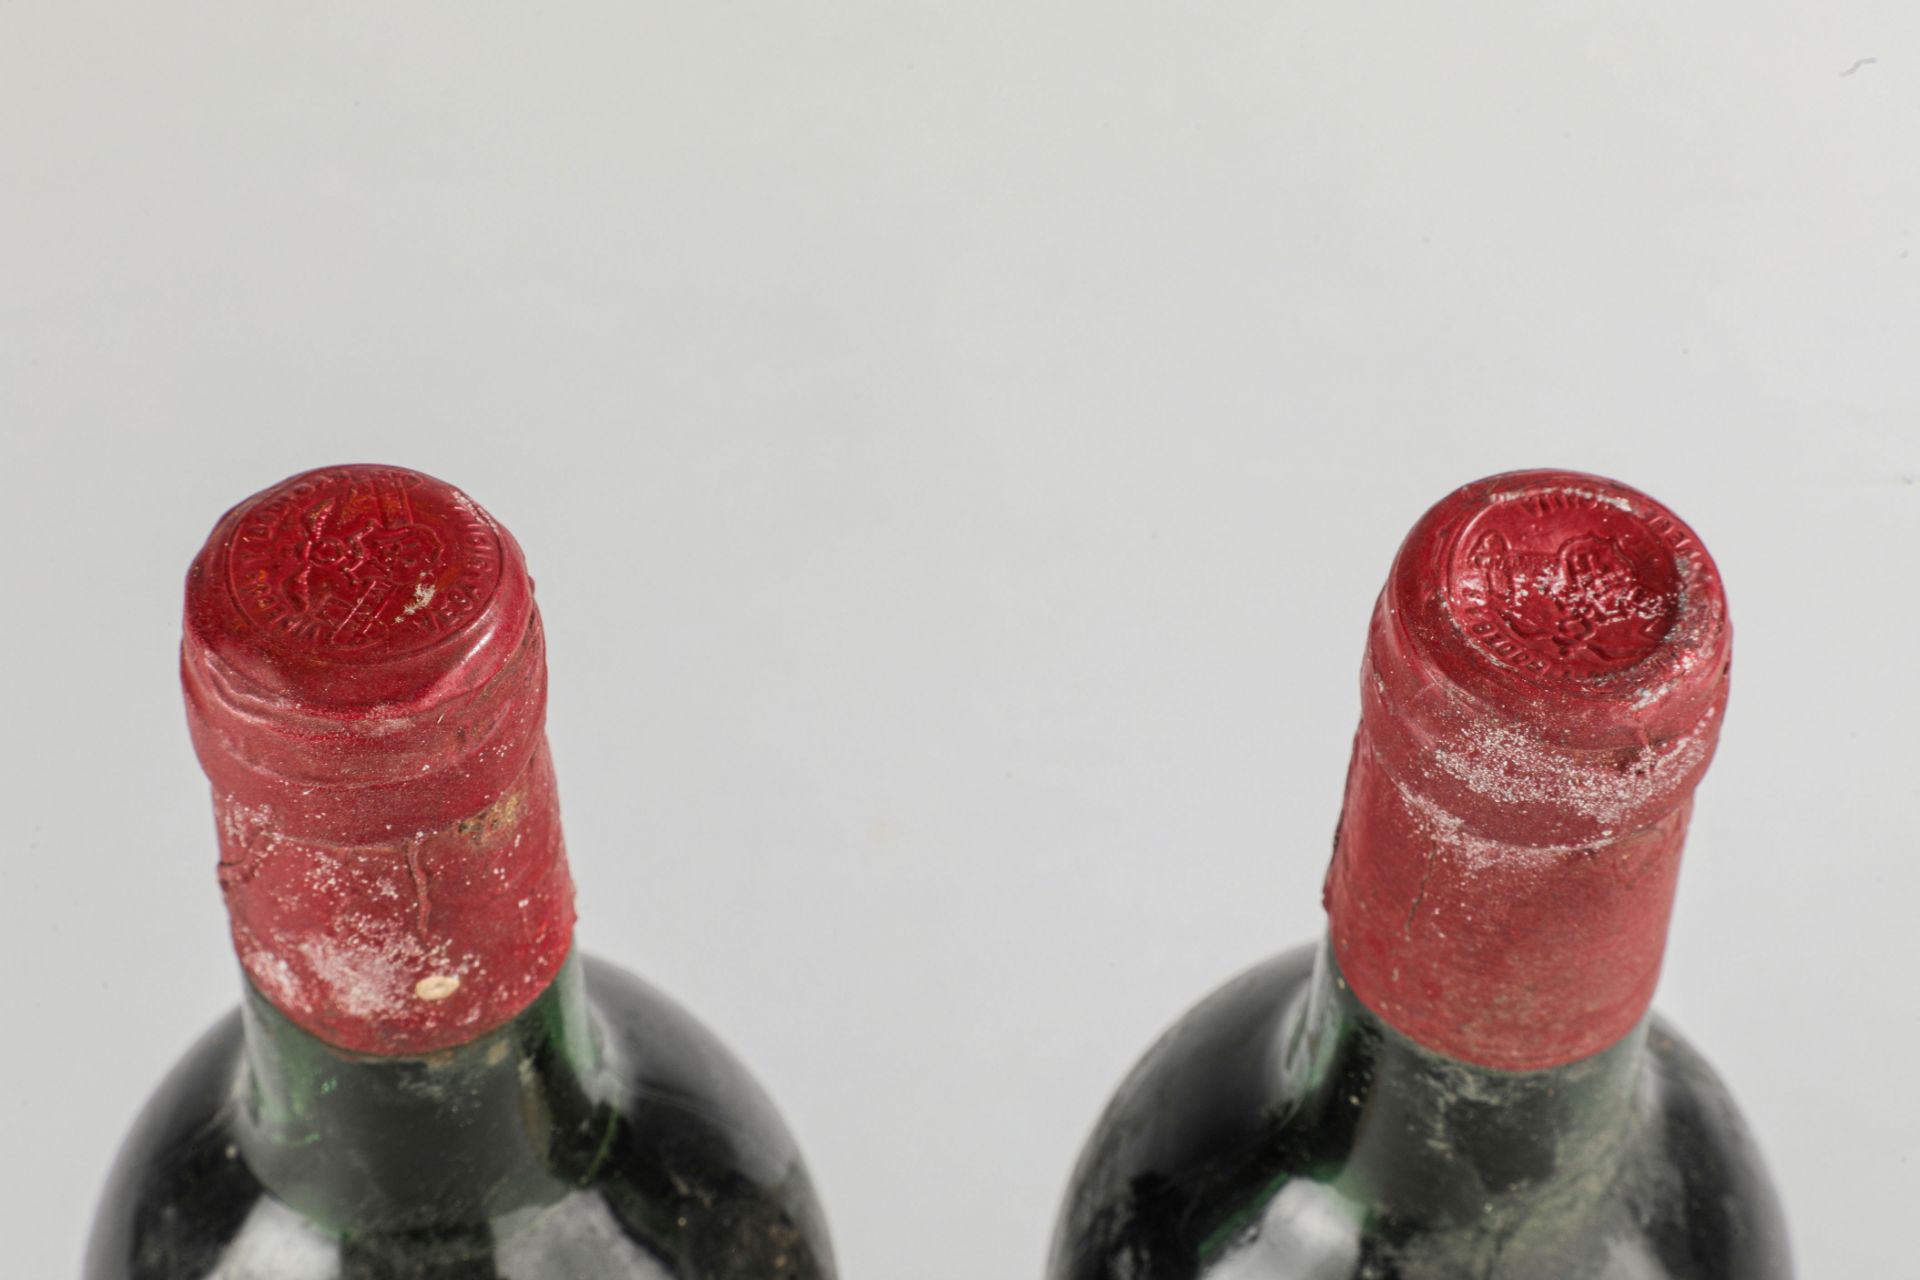 VEGA SICILIA UNICO. 1964. 2 Bouteilles N° 09957 et N°17497 sur production de 96 000 bouteilles. - Image 4 of 5